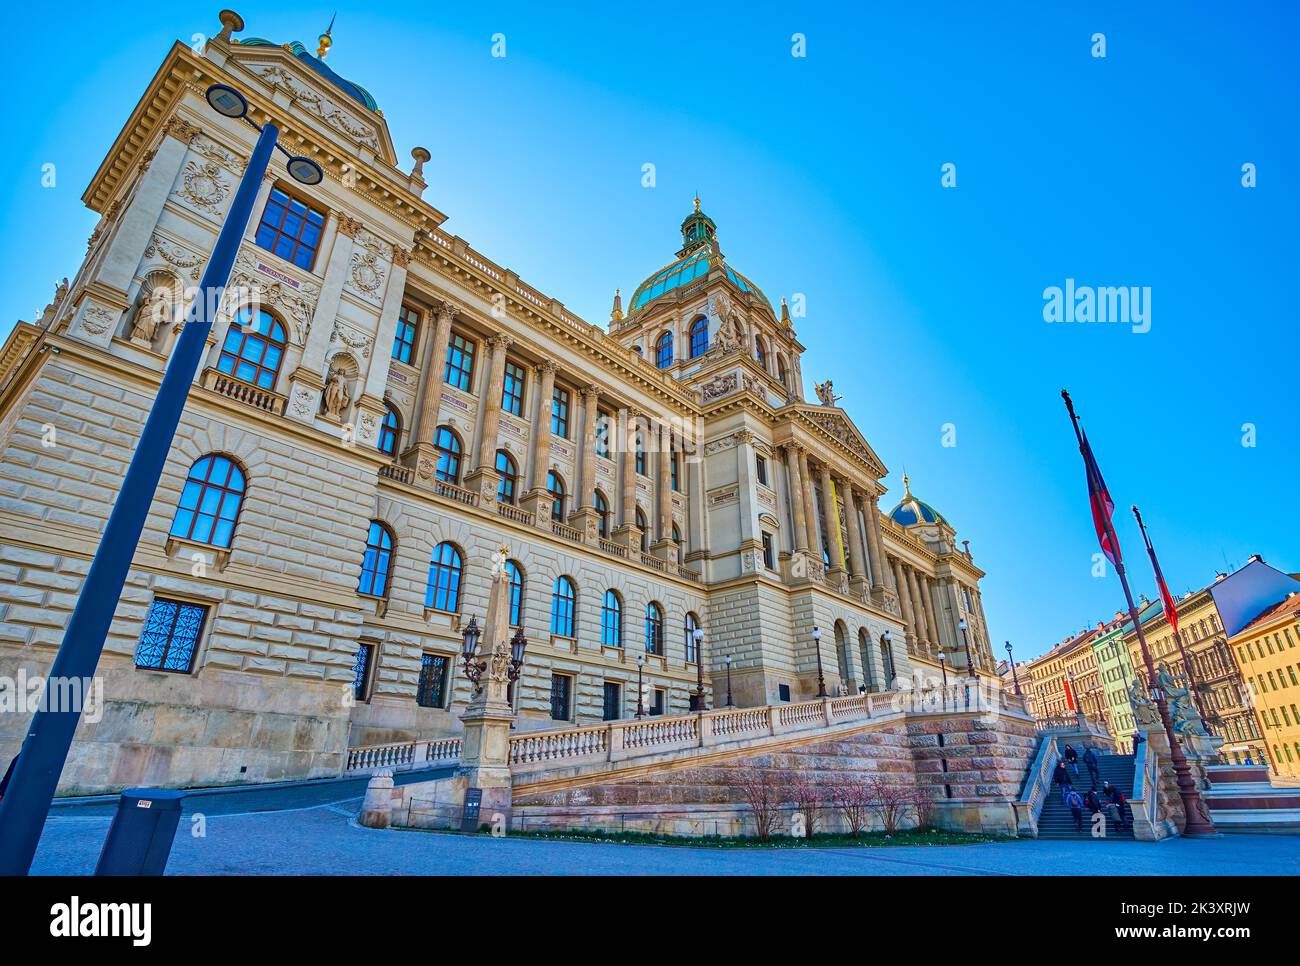 La vista sull'edificio principale di Narodni muzeum (Museo Nazionale) in stile neo-rinascimentale, Praga, Repubblica Ceca Foto Stock